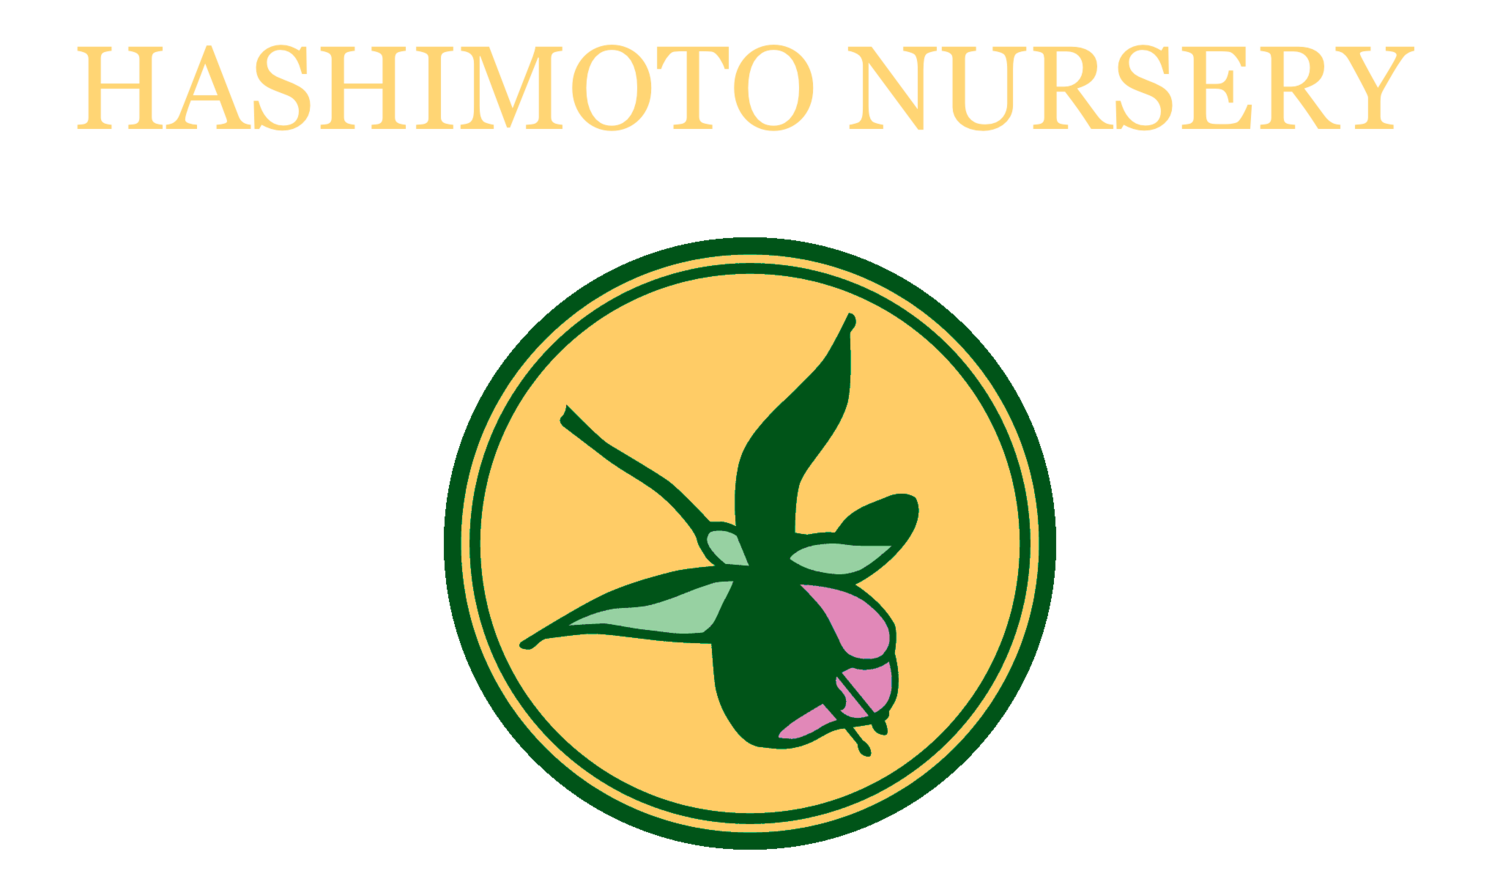 Company logo of Hashimoto Nursery